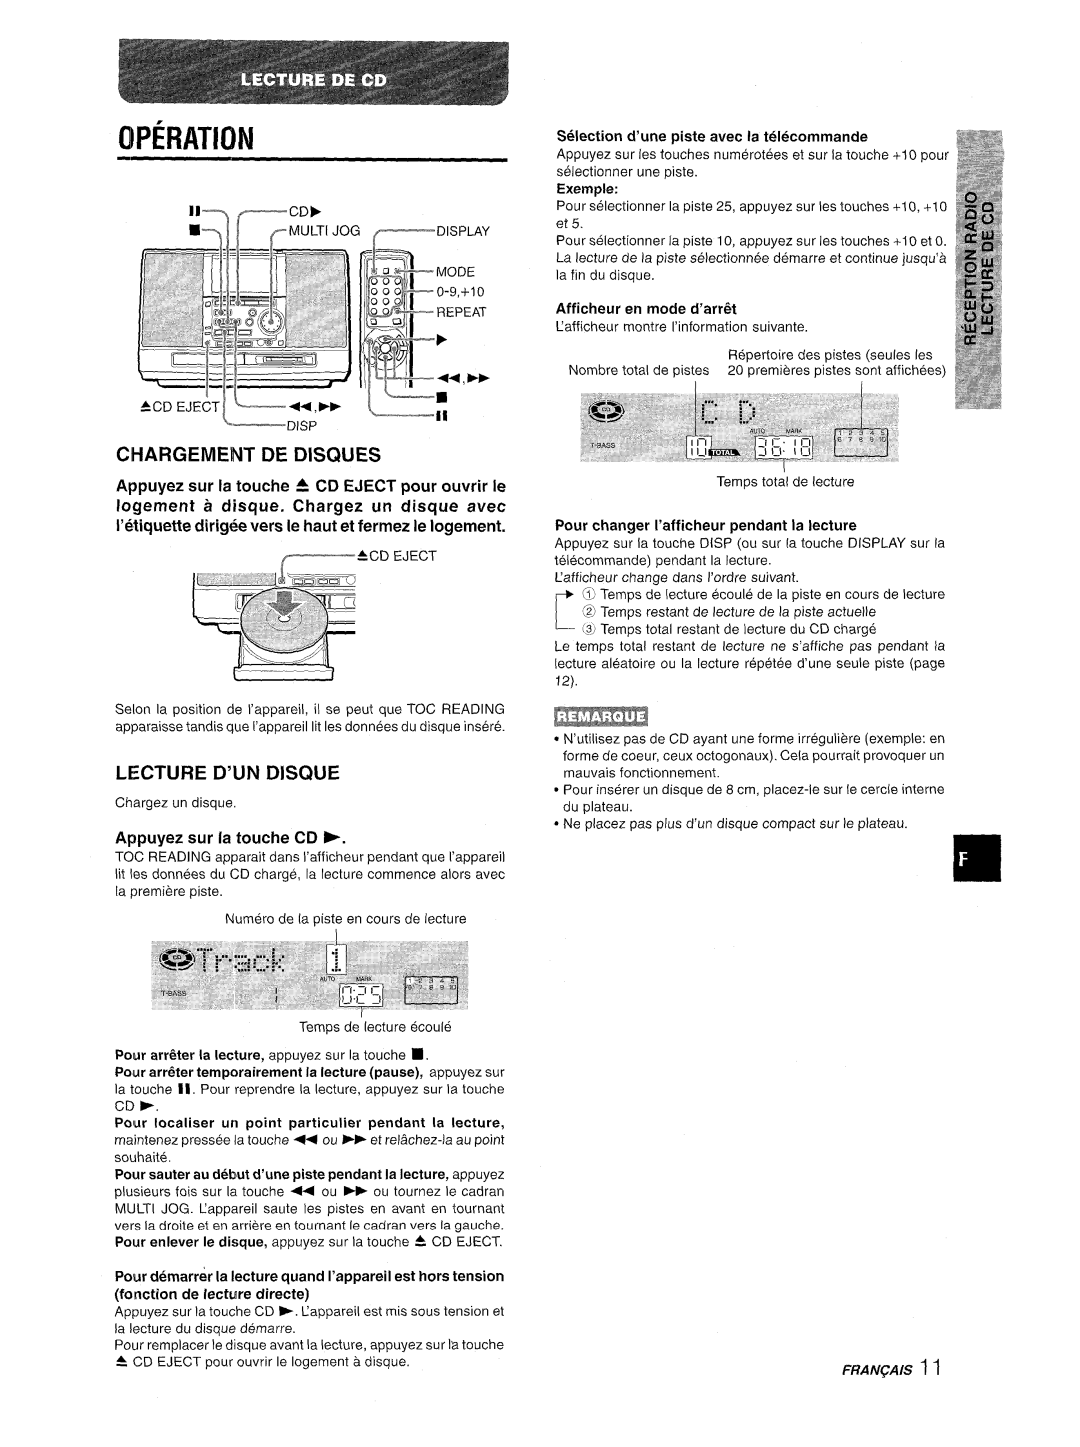 Aiwa CSD-MD50 manual Ci-Iargement De Discn.Jes, Lecture D’Un Disque, Operation, Selection d’une piste avec la tel@commande 